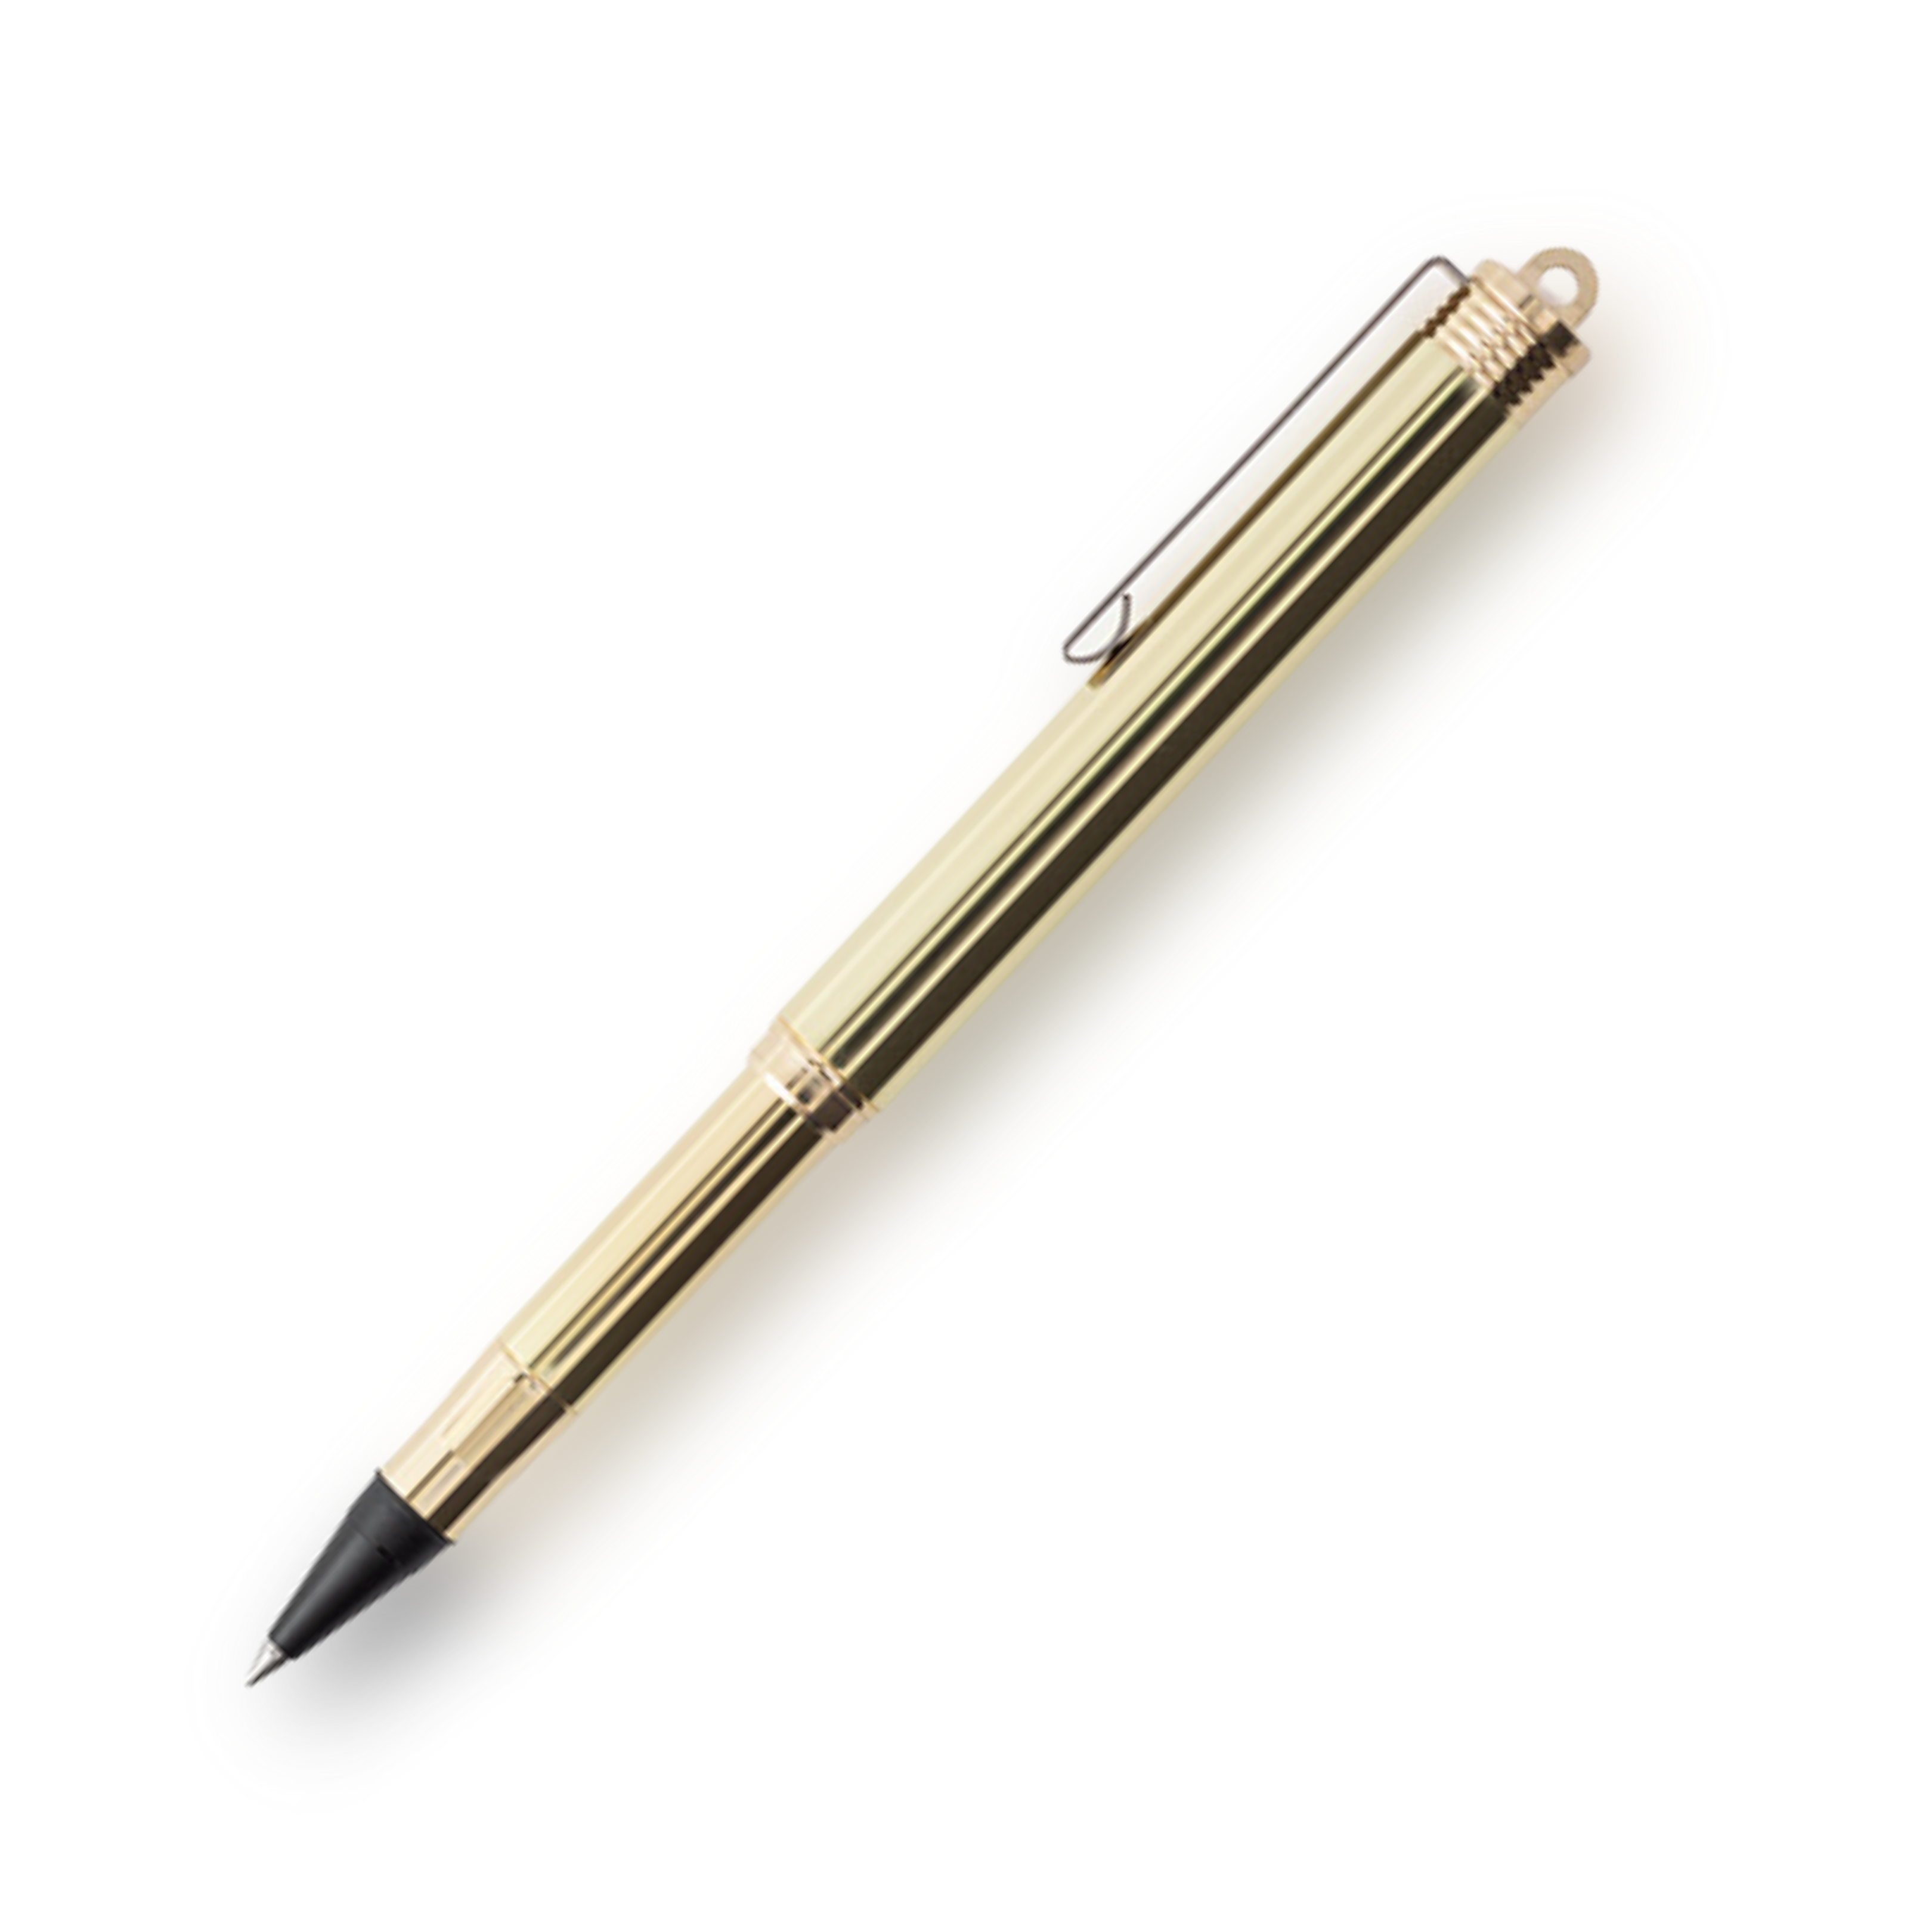 TRC BRASS Ballpoint Pen Solid Brass